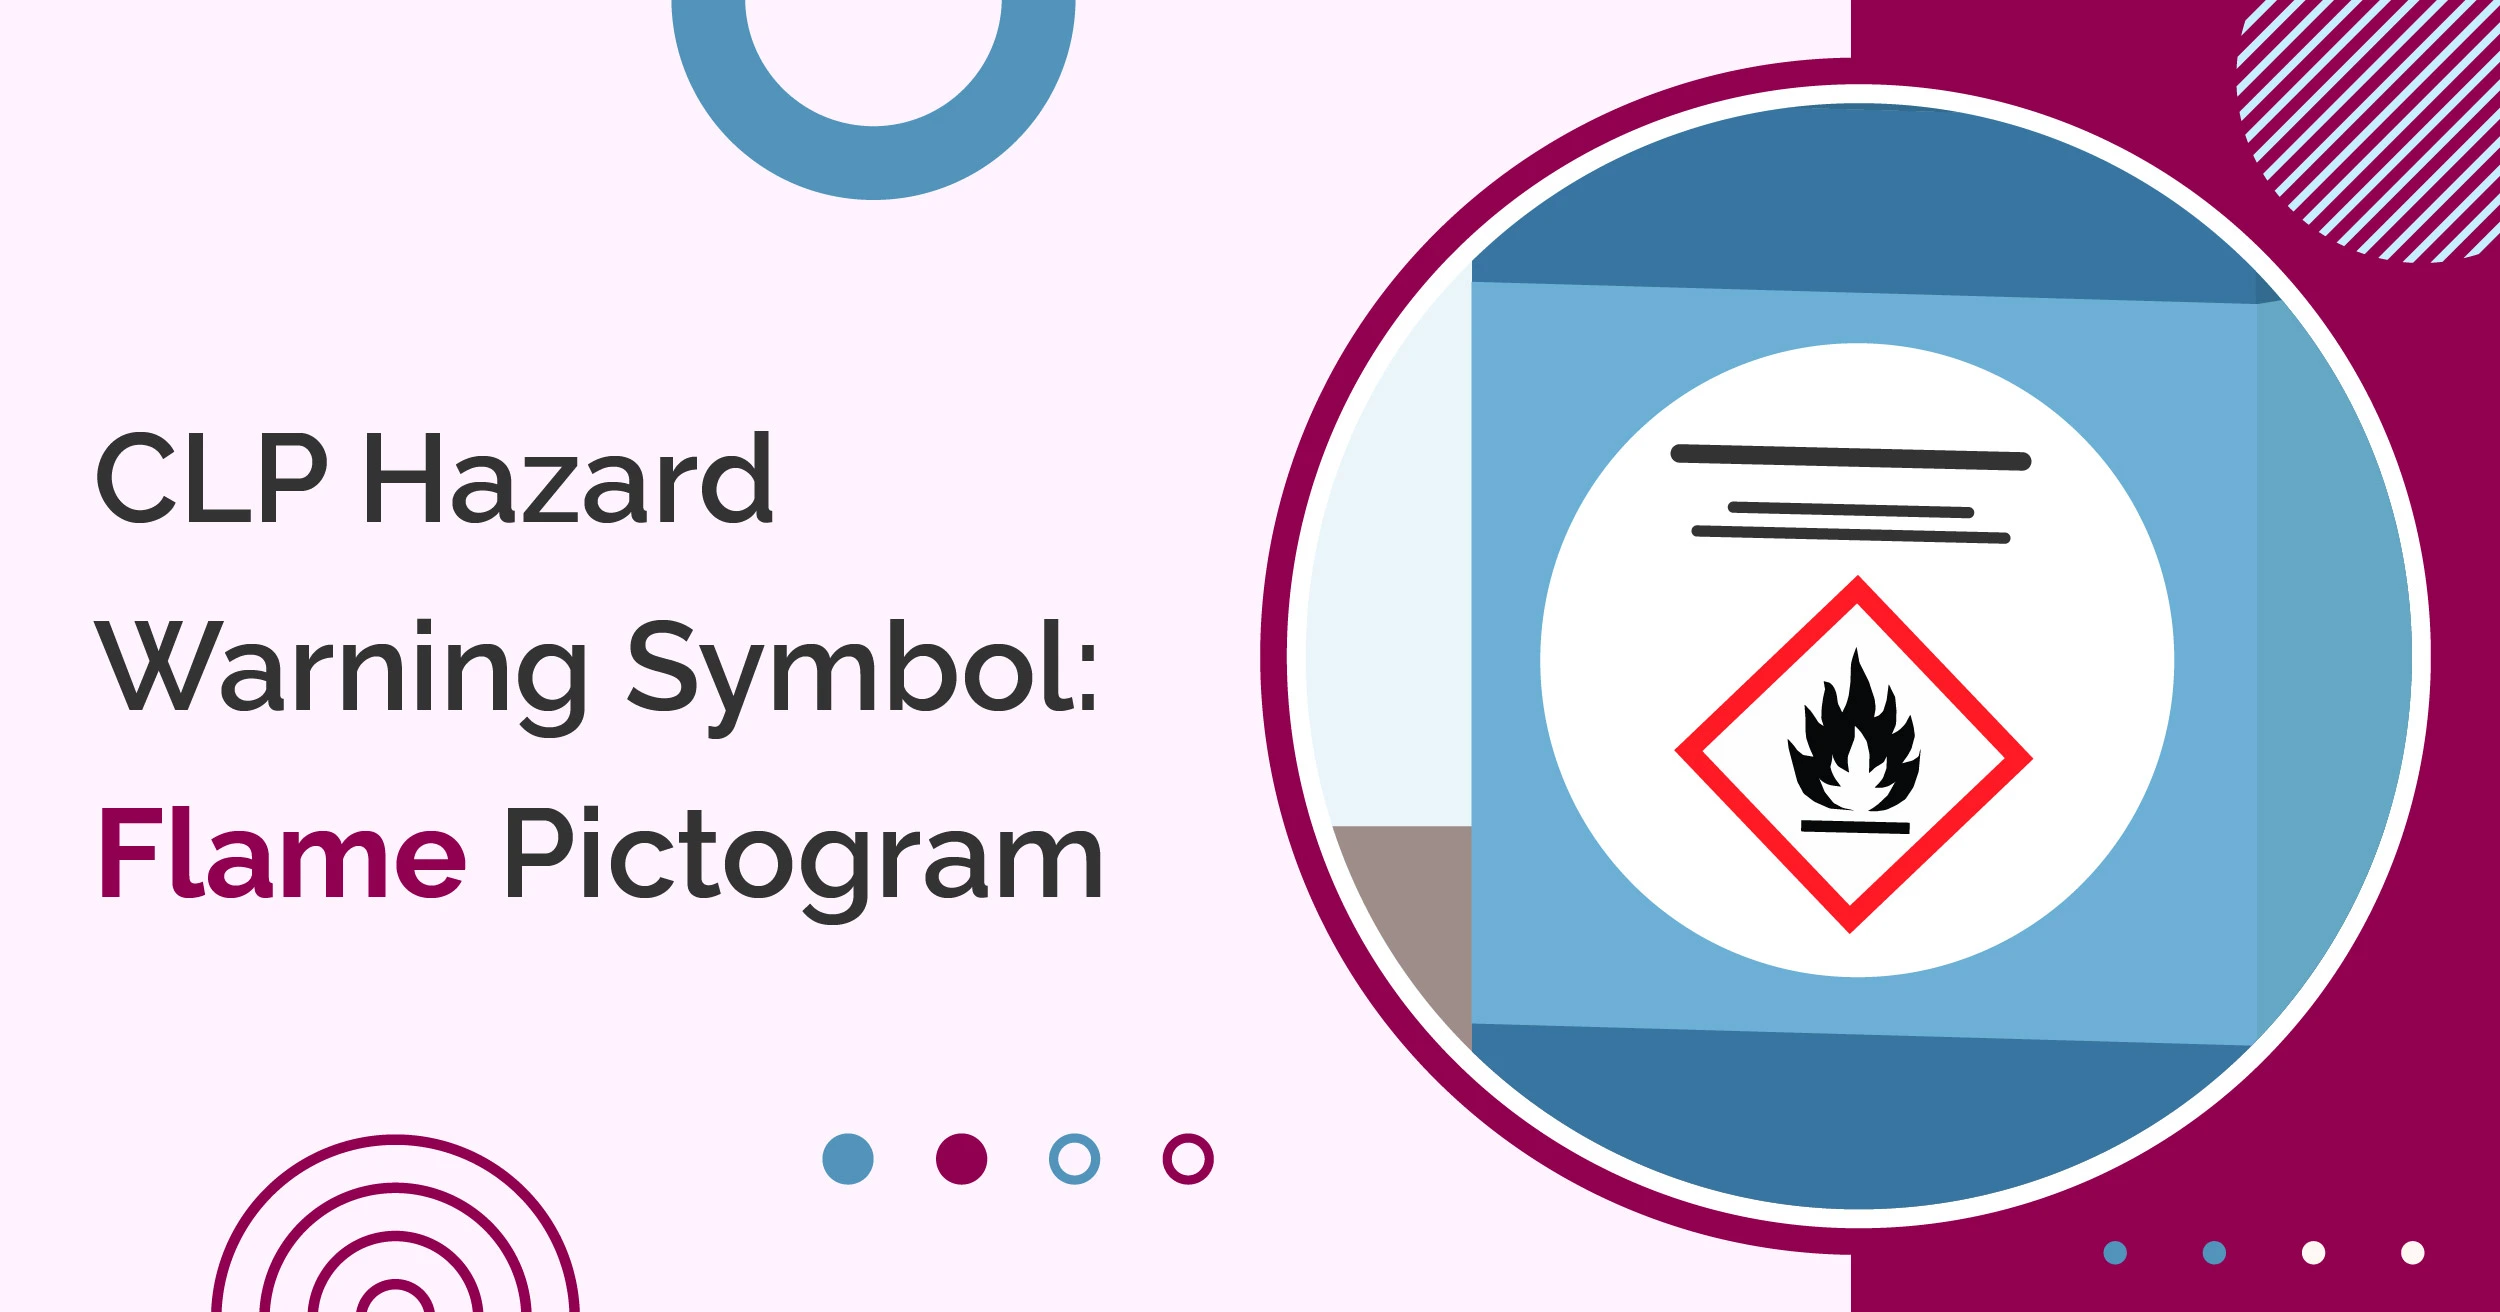 CLP Hazard Warning Symbol: Flame Pictogram